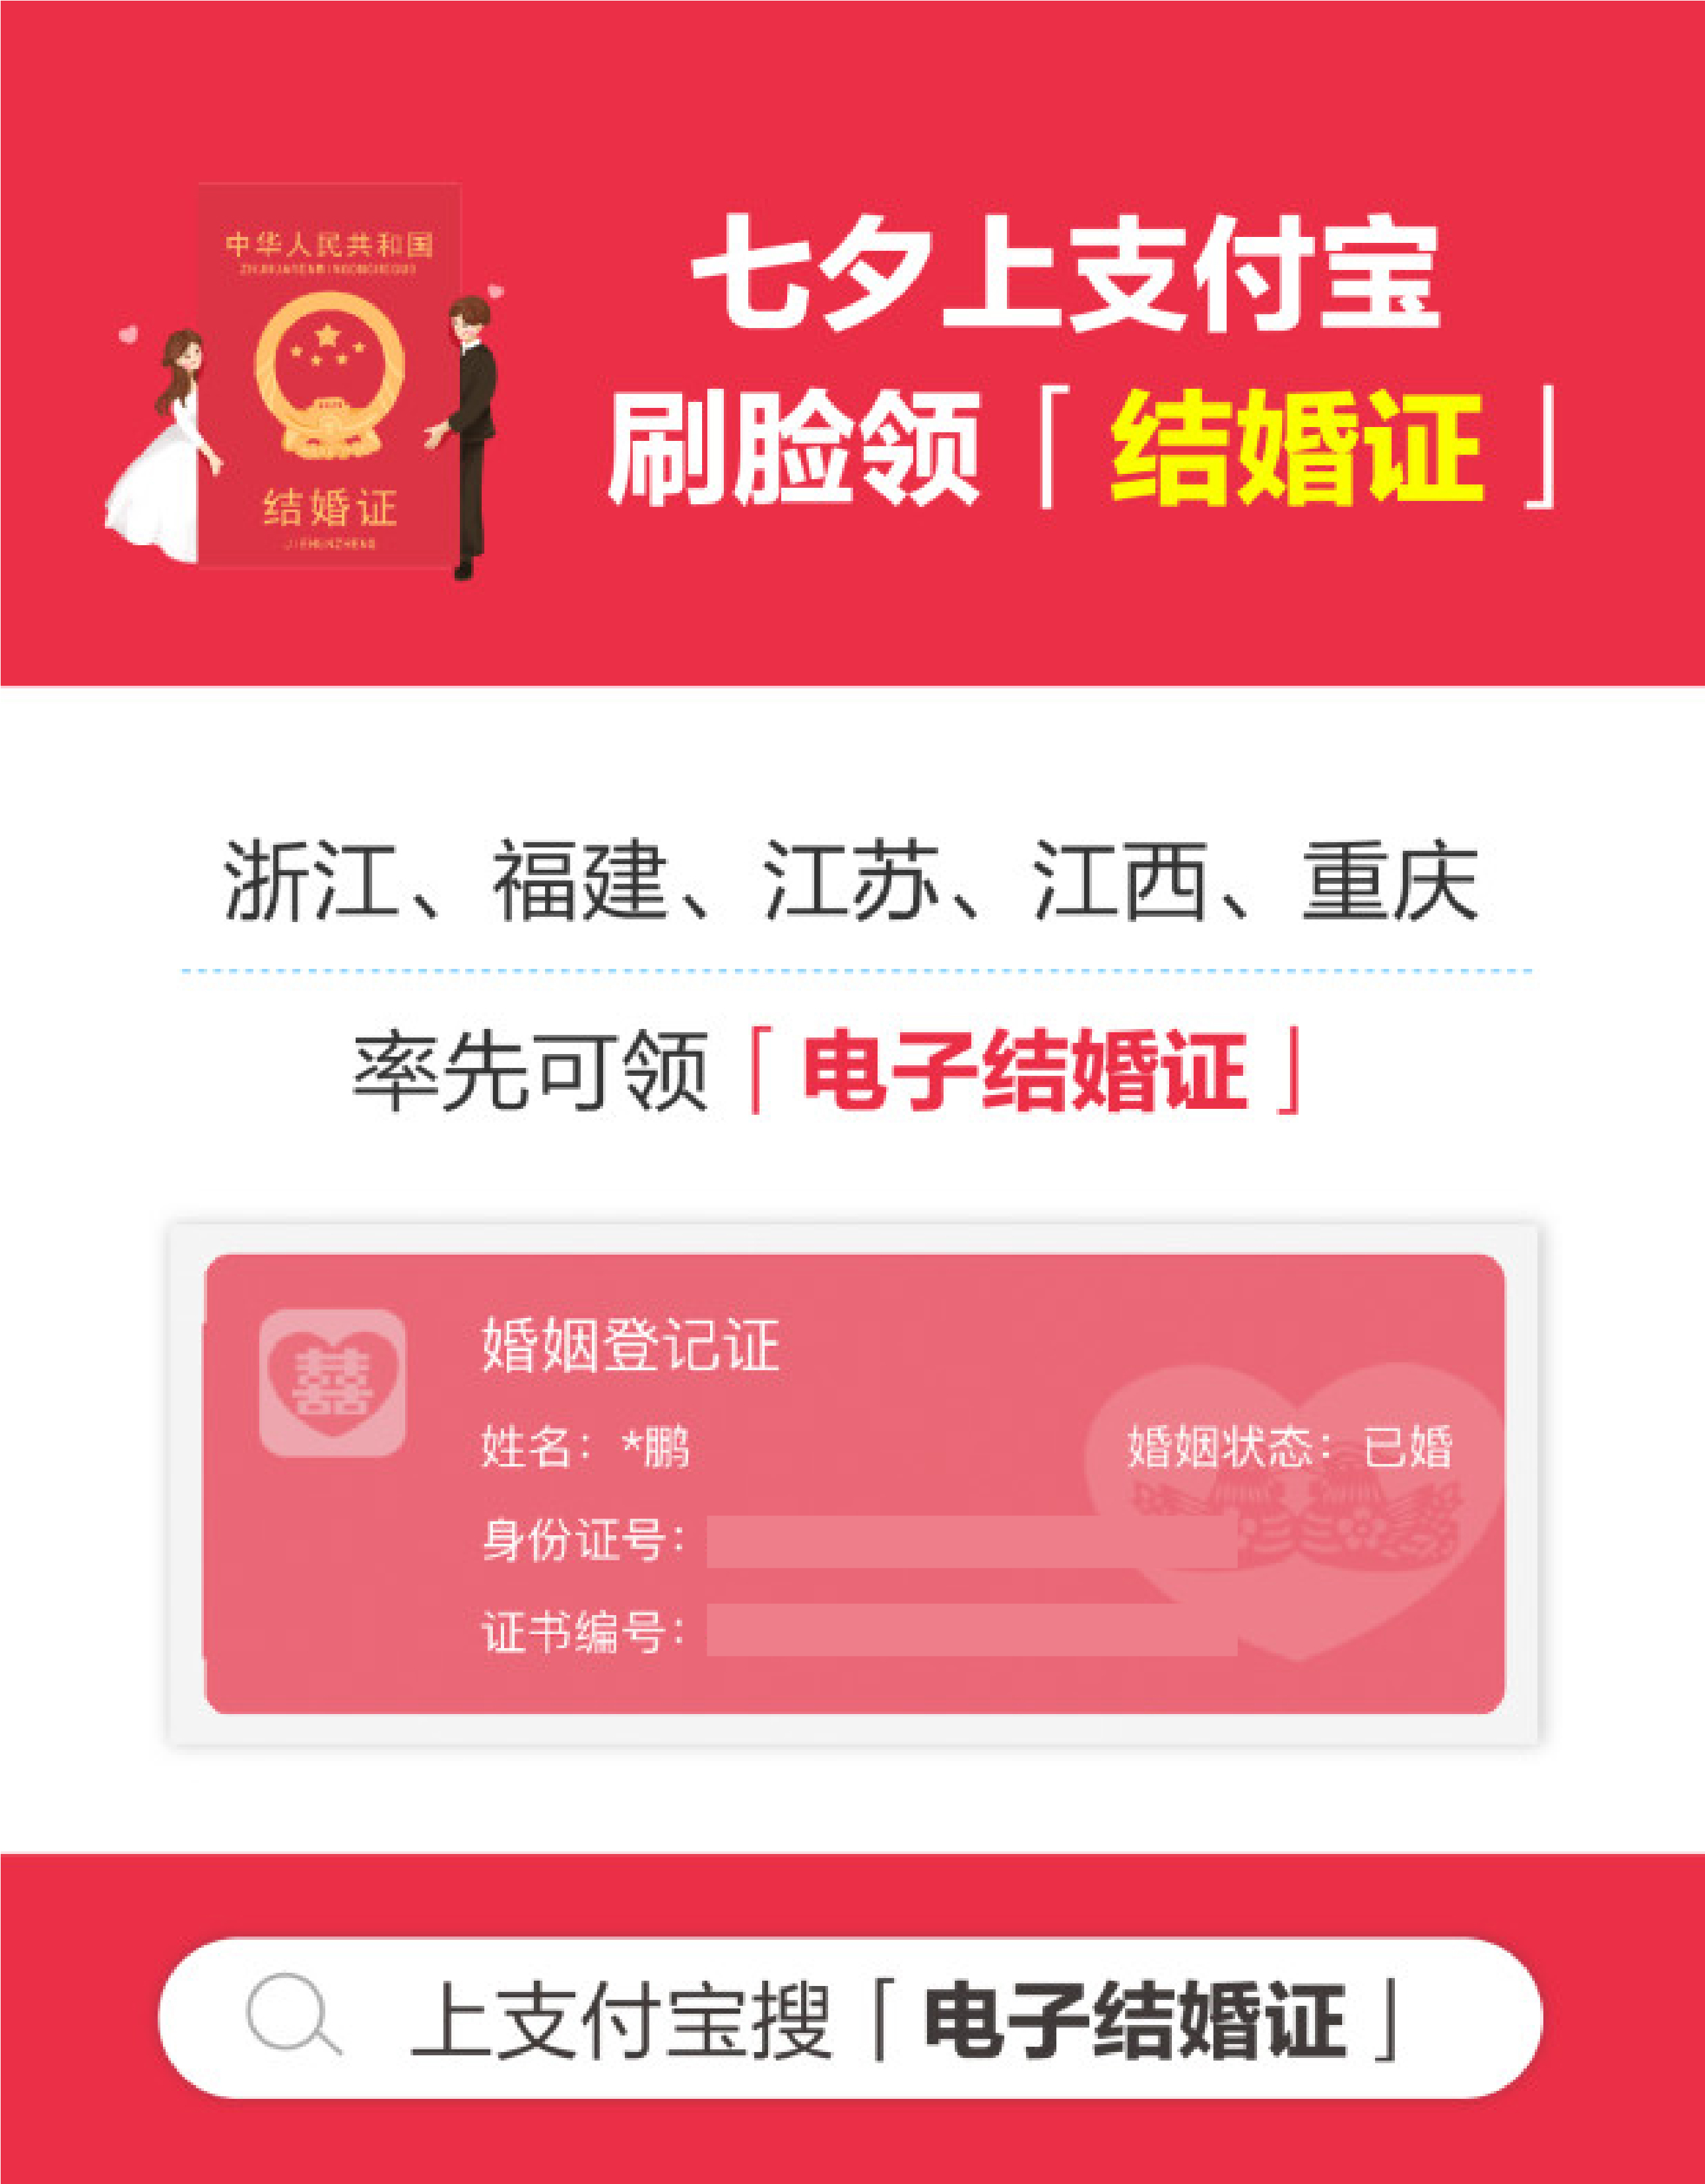 上支付宝搜“电子结婚证” 福建、江西、江苏、浙江、重庆5省市首批支持